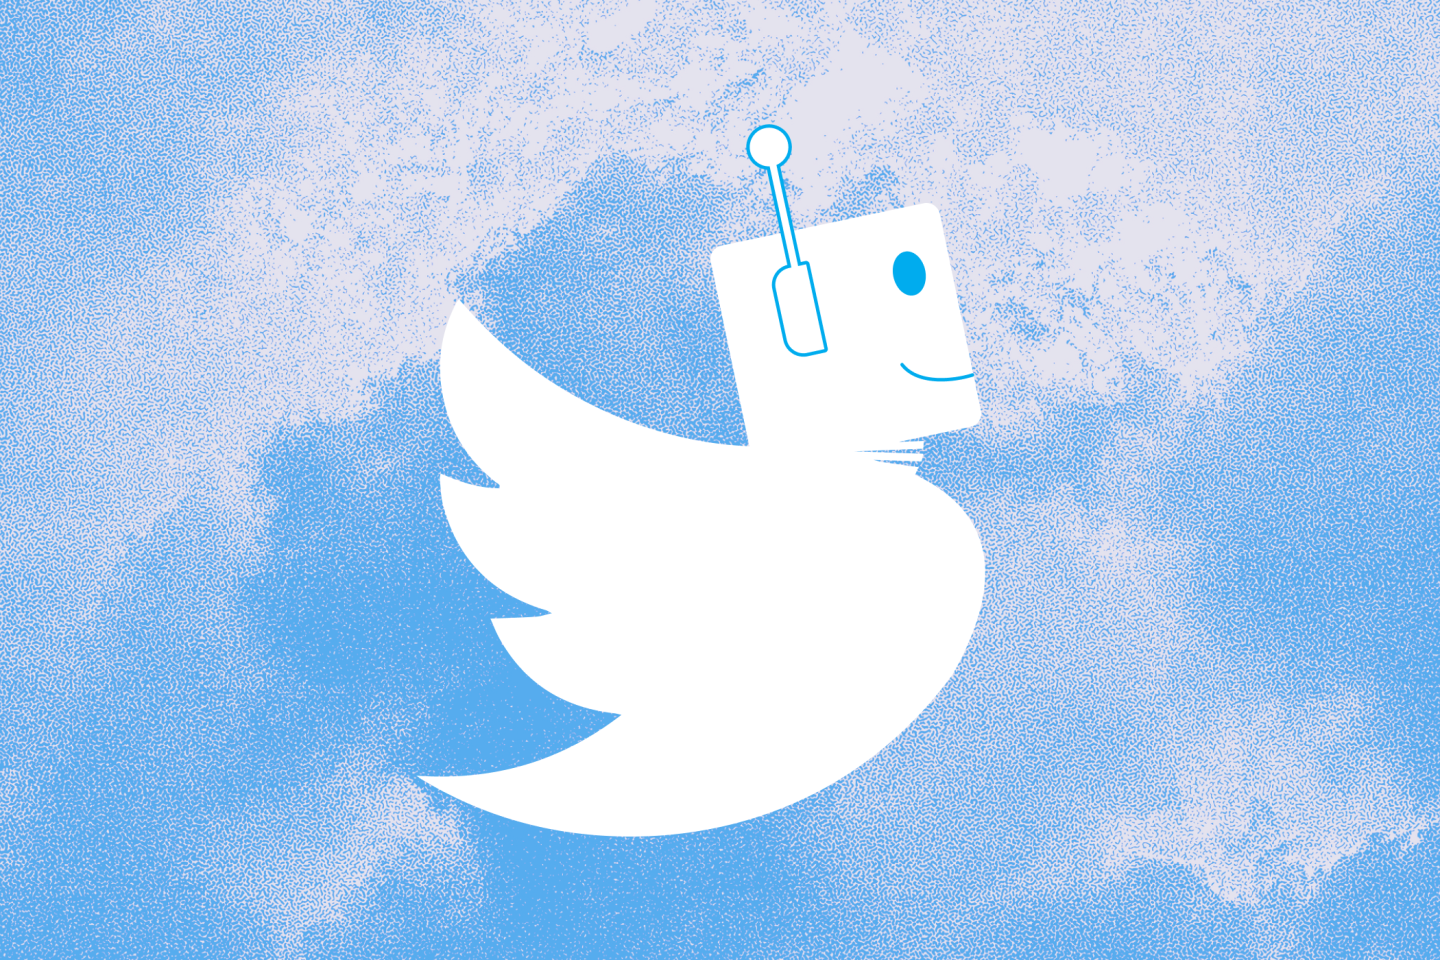 Sur Twitter, des « bots » mal-aimés pourtant au cœur de son identité